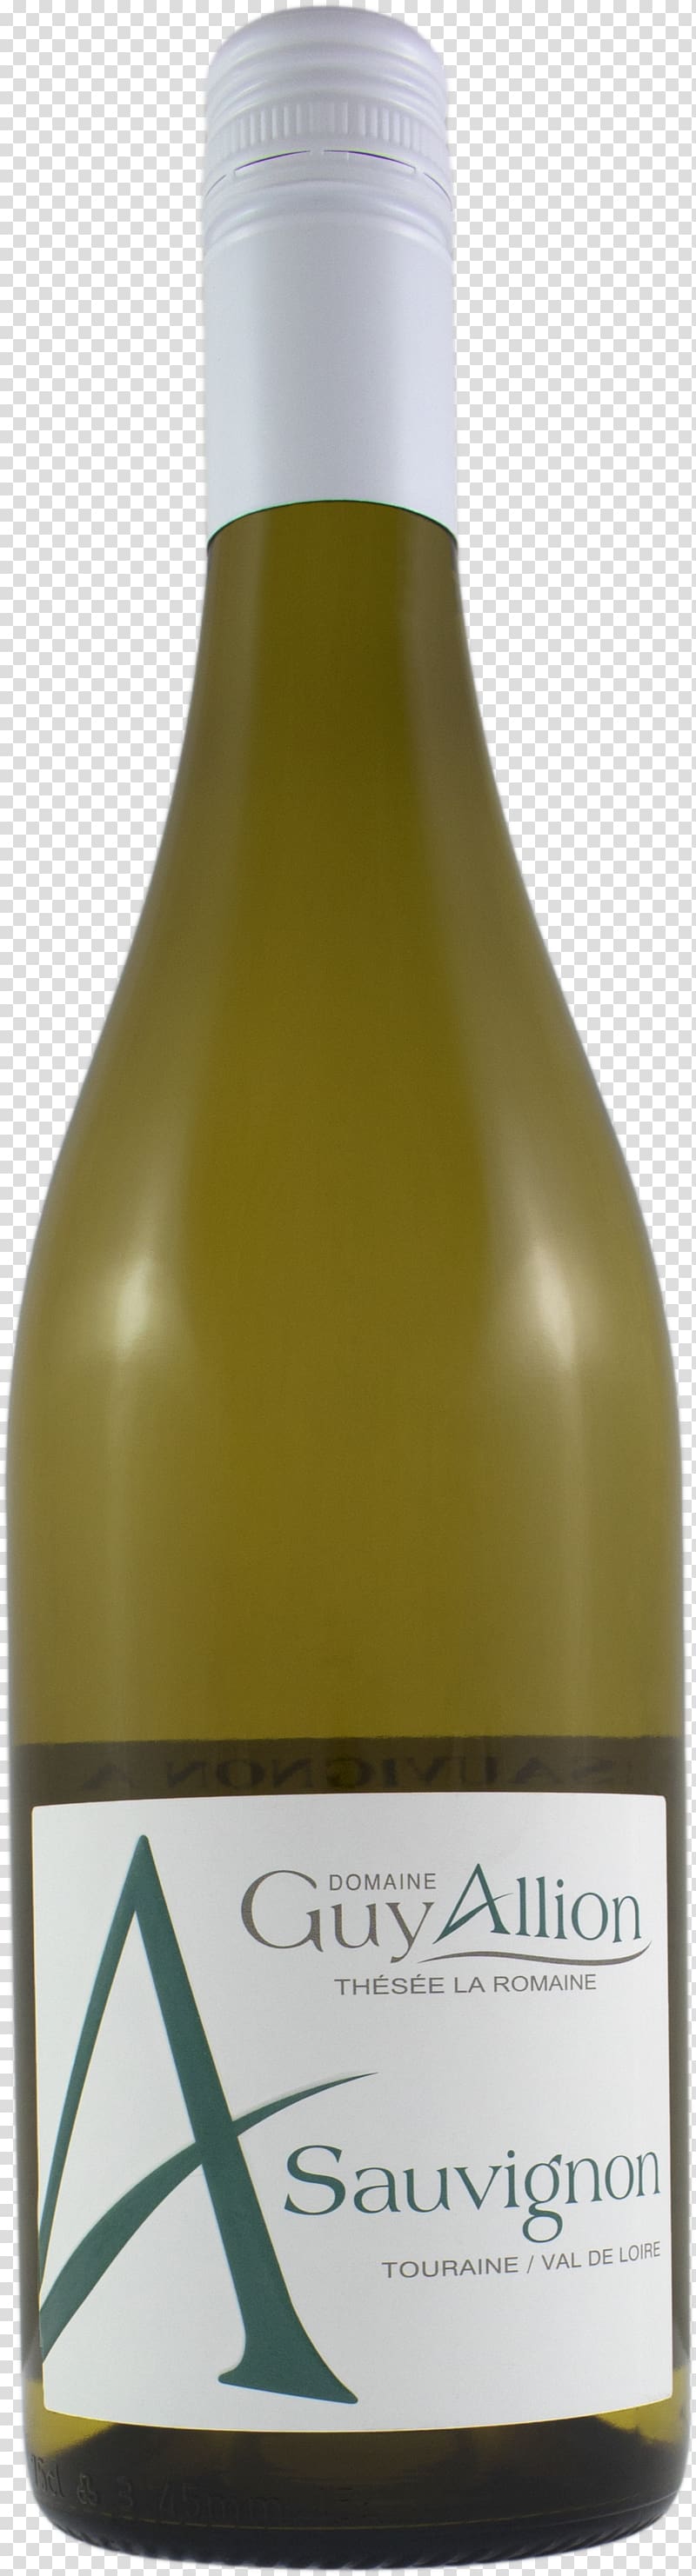 White wine Sauvignon blanc Côtes de Gascogne IGP Aroma, wine transparent background PNG clipart